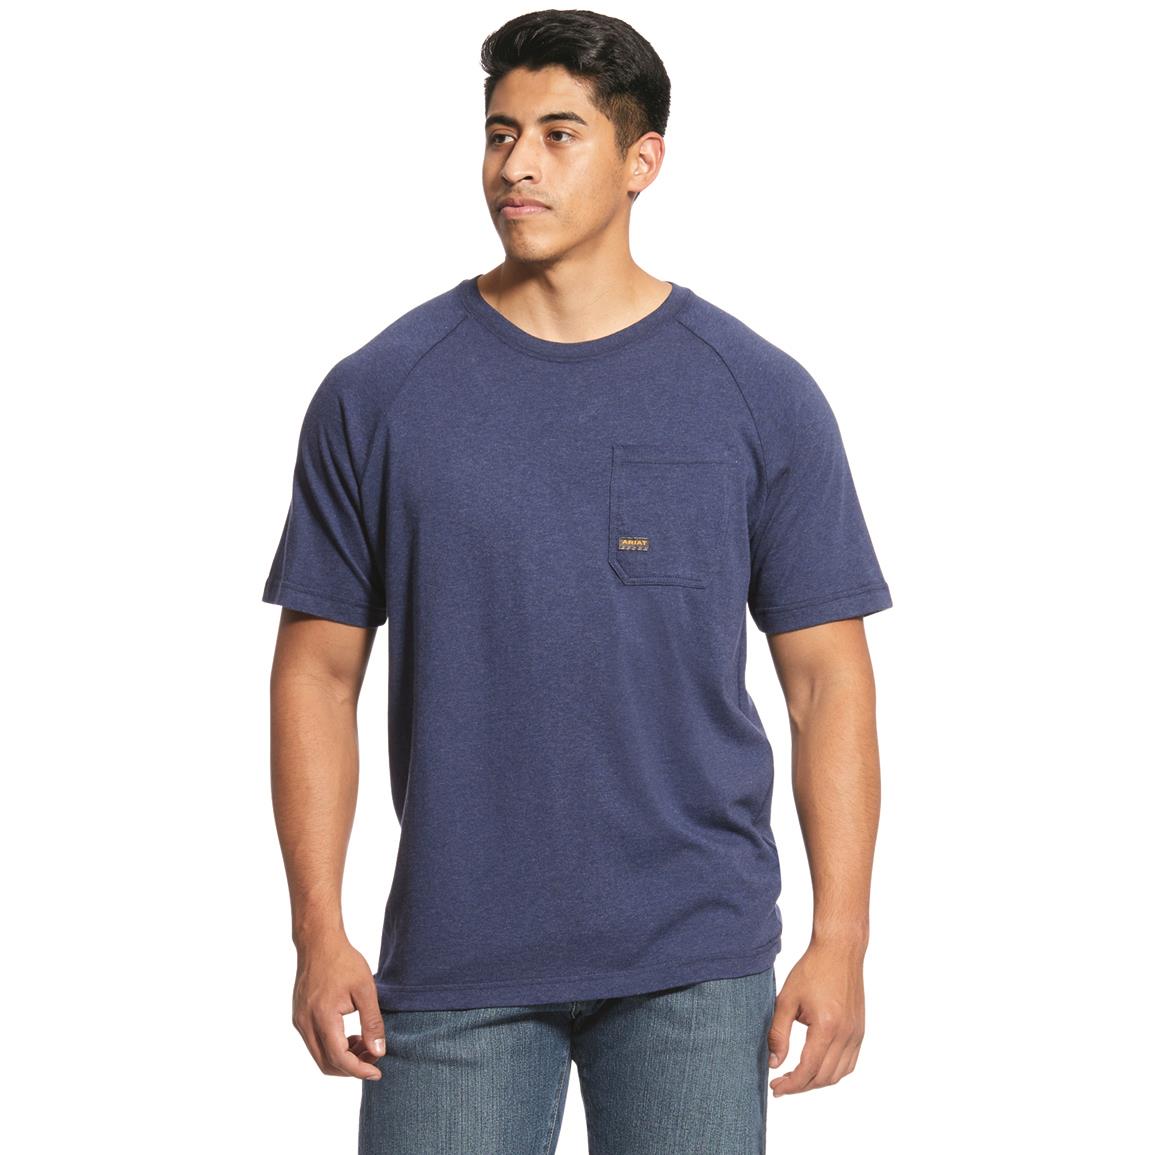 Ariat Men's Rebar CottonStrong T-Shirt, Navy Heather